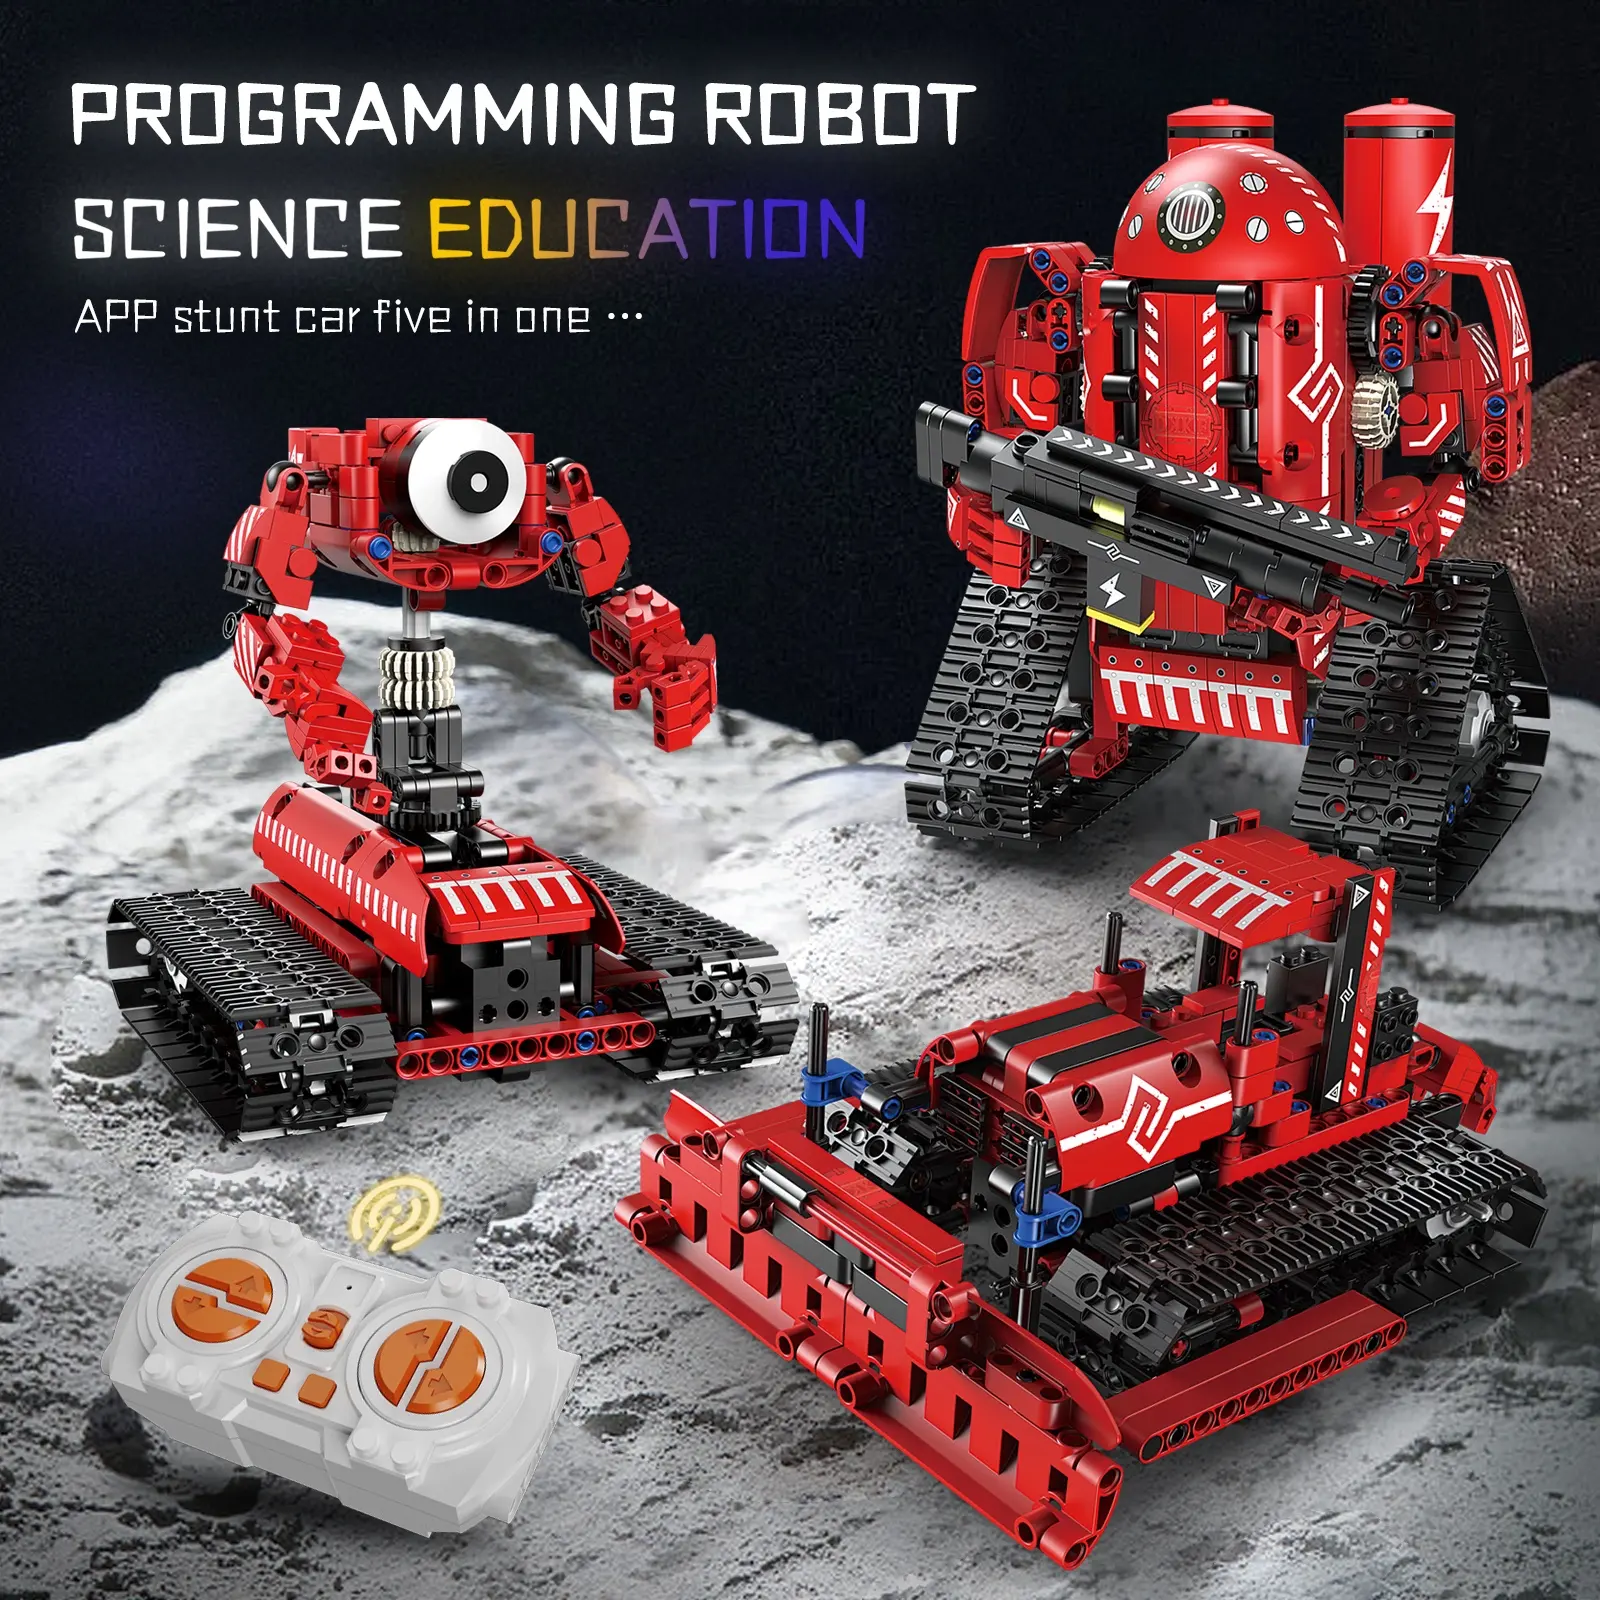 Tige assembler rc télécommande codage robotique Kit jouets enfants programmation éducative brique Construction jouets ensemble